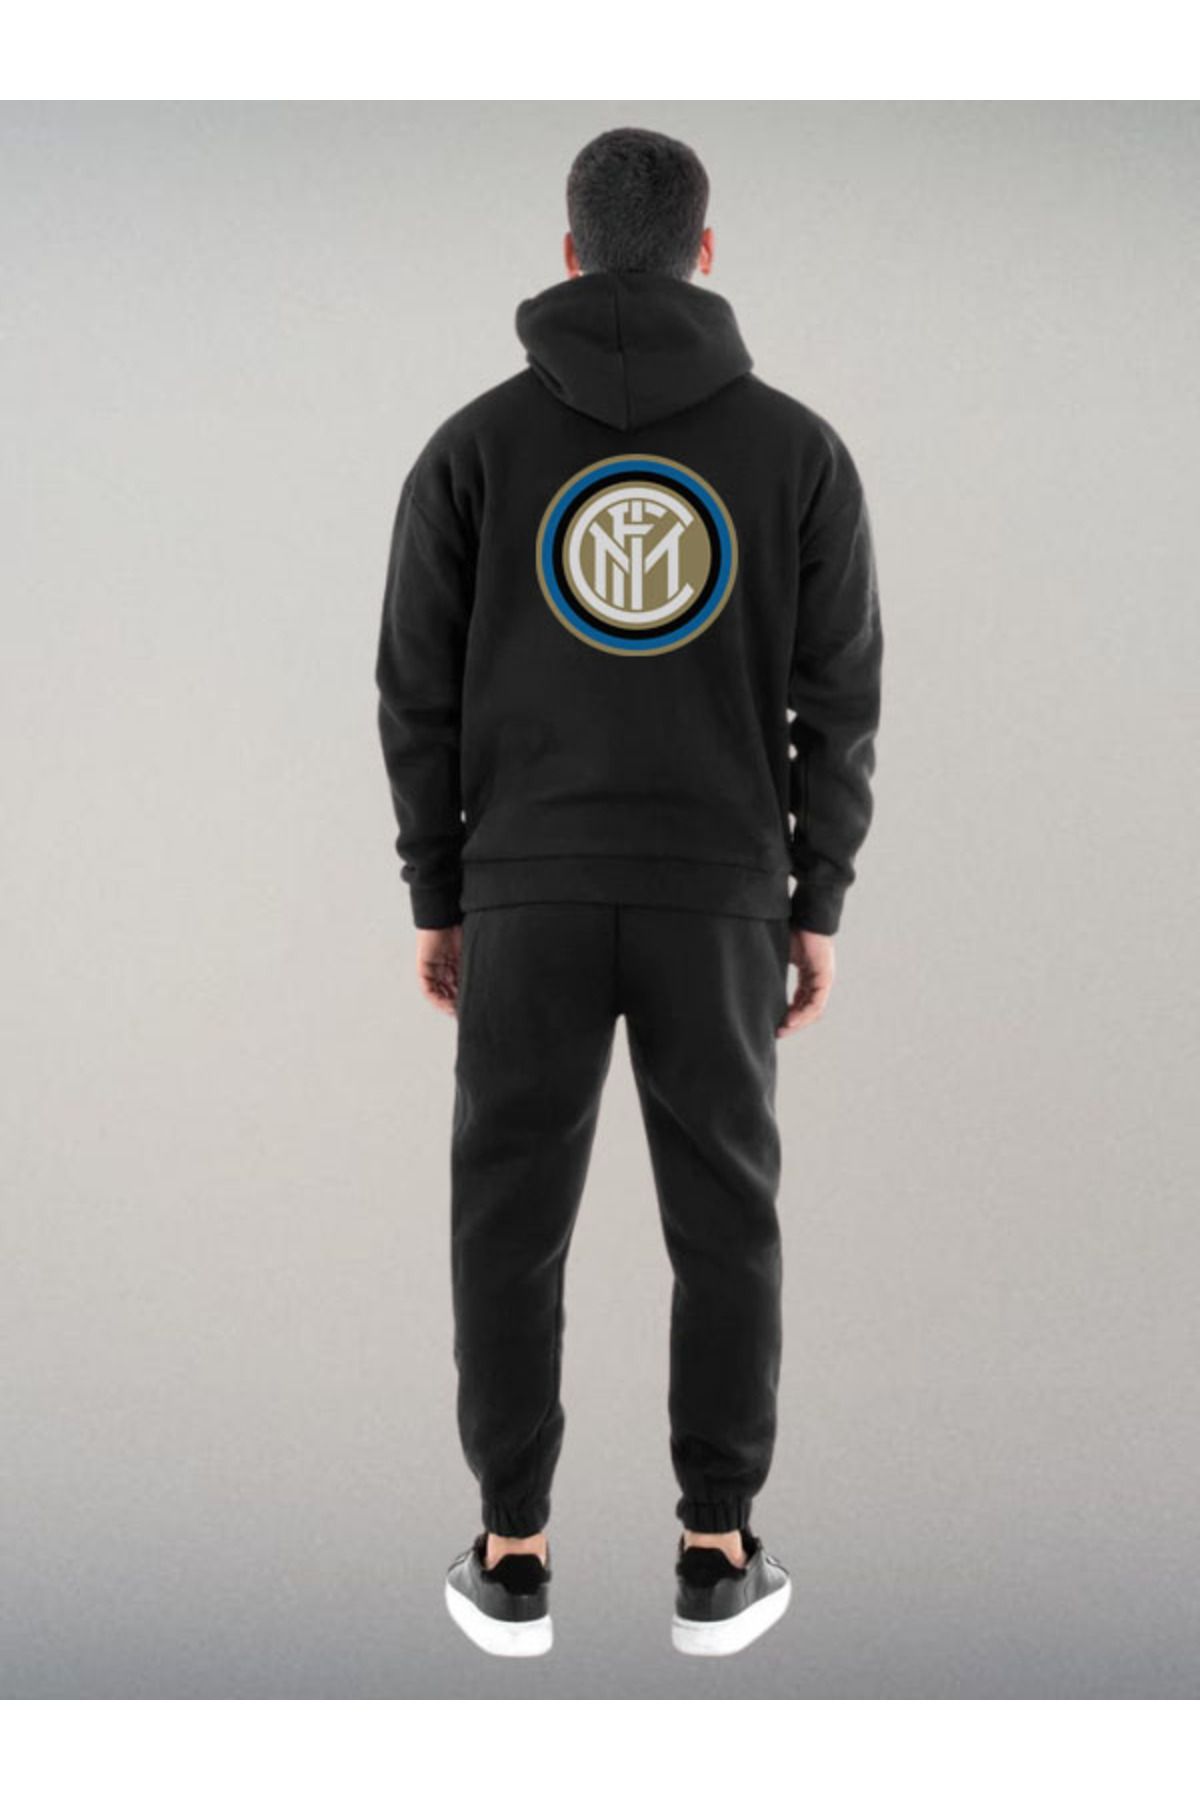 Darkia Inter Milan Futbol Takımı Özel Tasarım Baskılı Kapşonlu Sweatshirt Hoodie Spor Eşofman Takımı